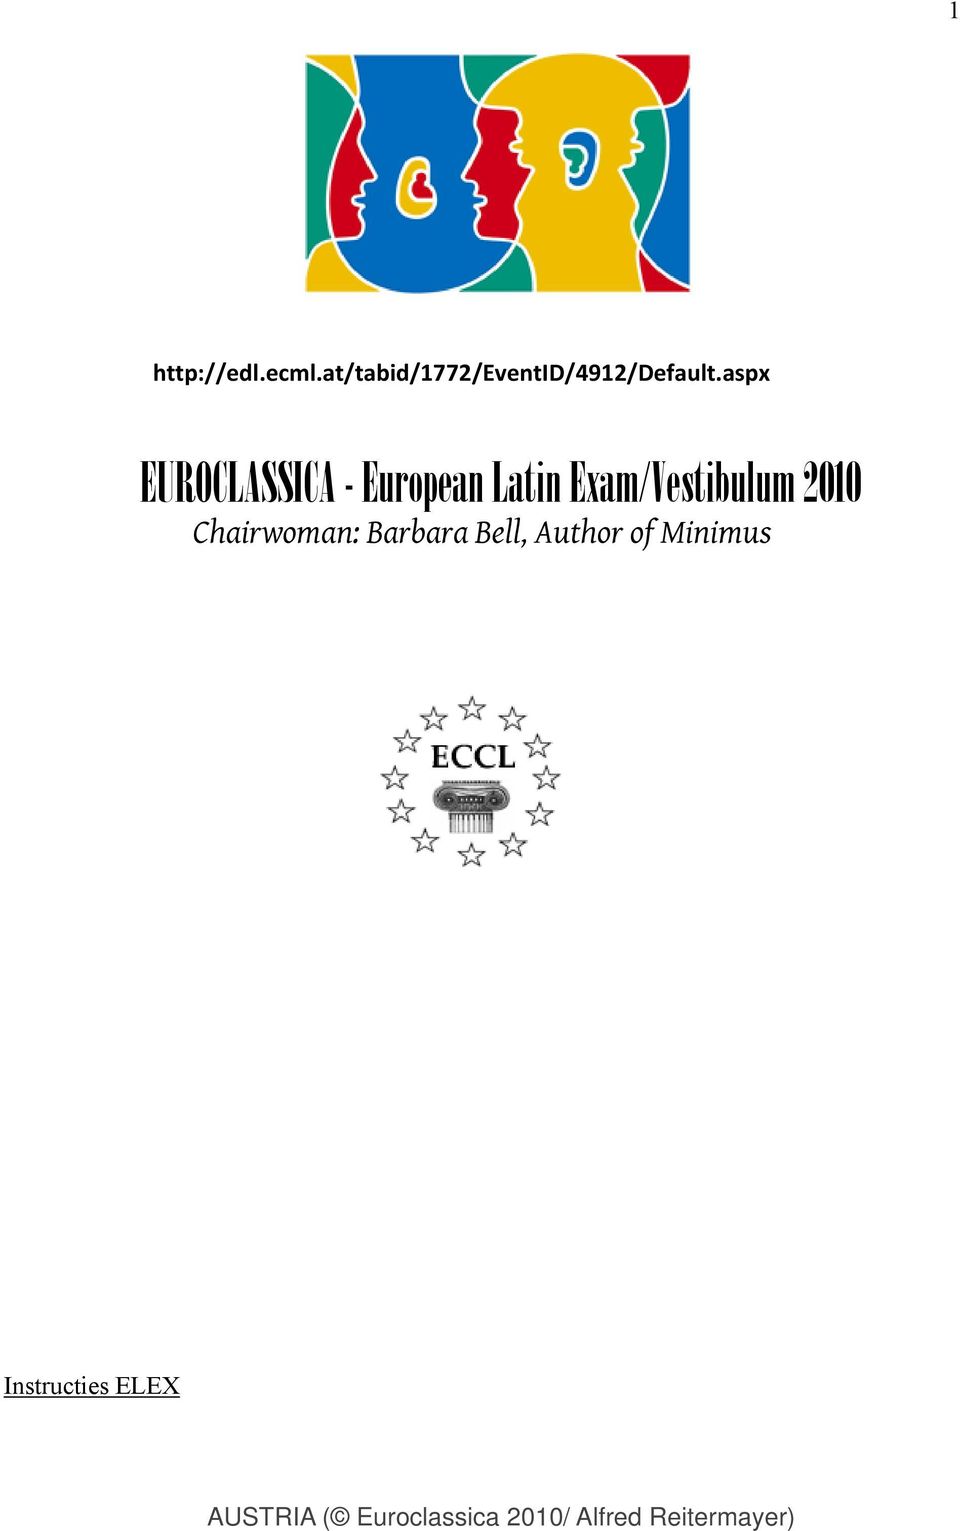 aspx EUROCLASSICA - European Latin